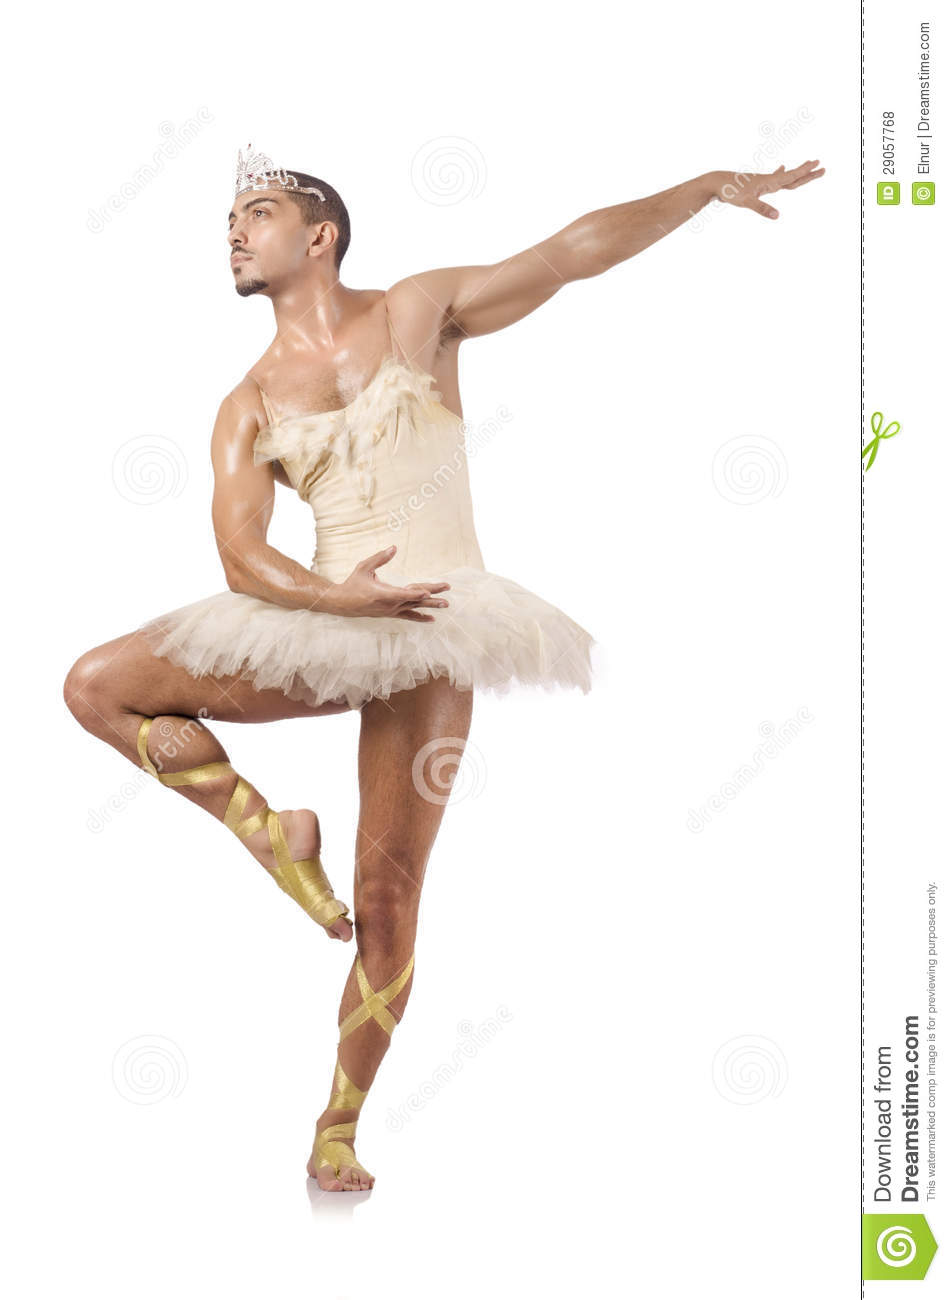 Man In Ballet Tutu Royalty Free Stock Photos   Image  29057768